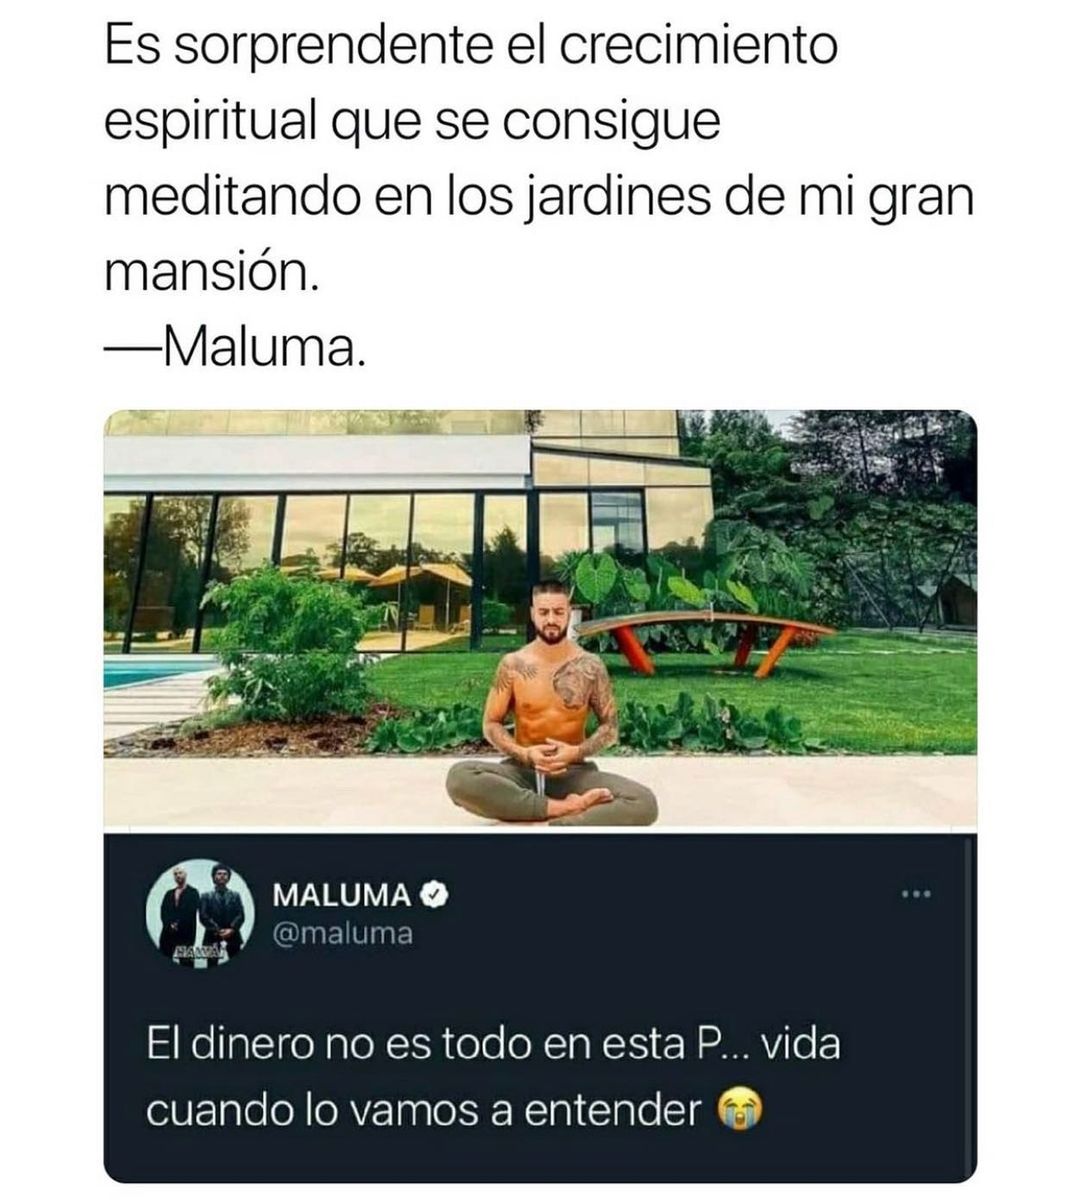 Es sorprendente el crecimiento espiritual que se consigue meditando en los jardines de mi gran mansión.  Maluma: El dinero no es todo en esta p... vida cuando lo vamos a entender.